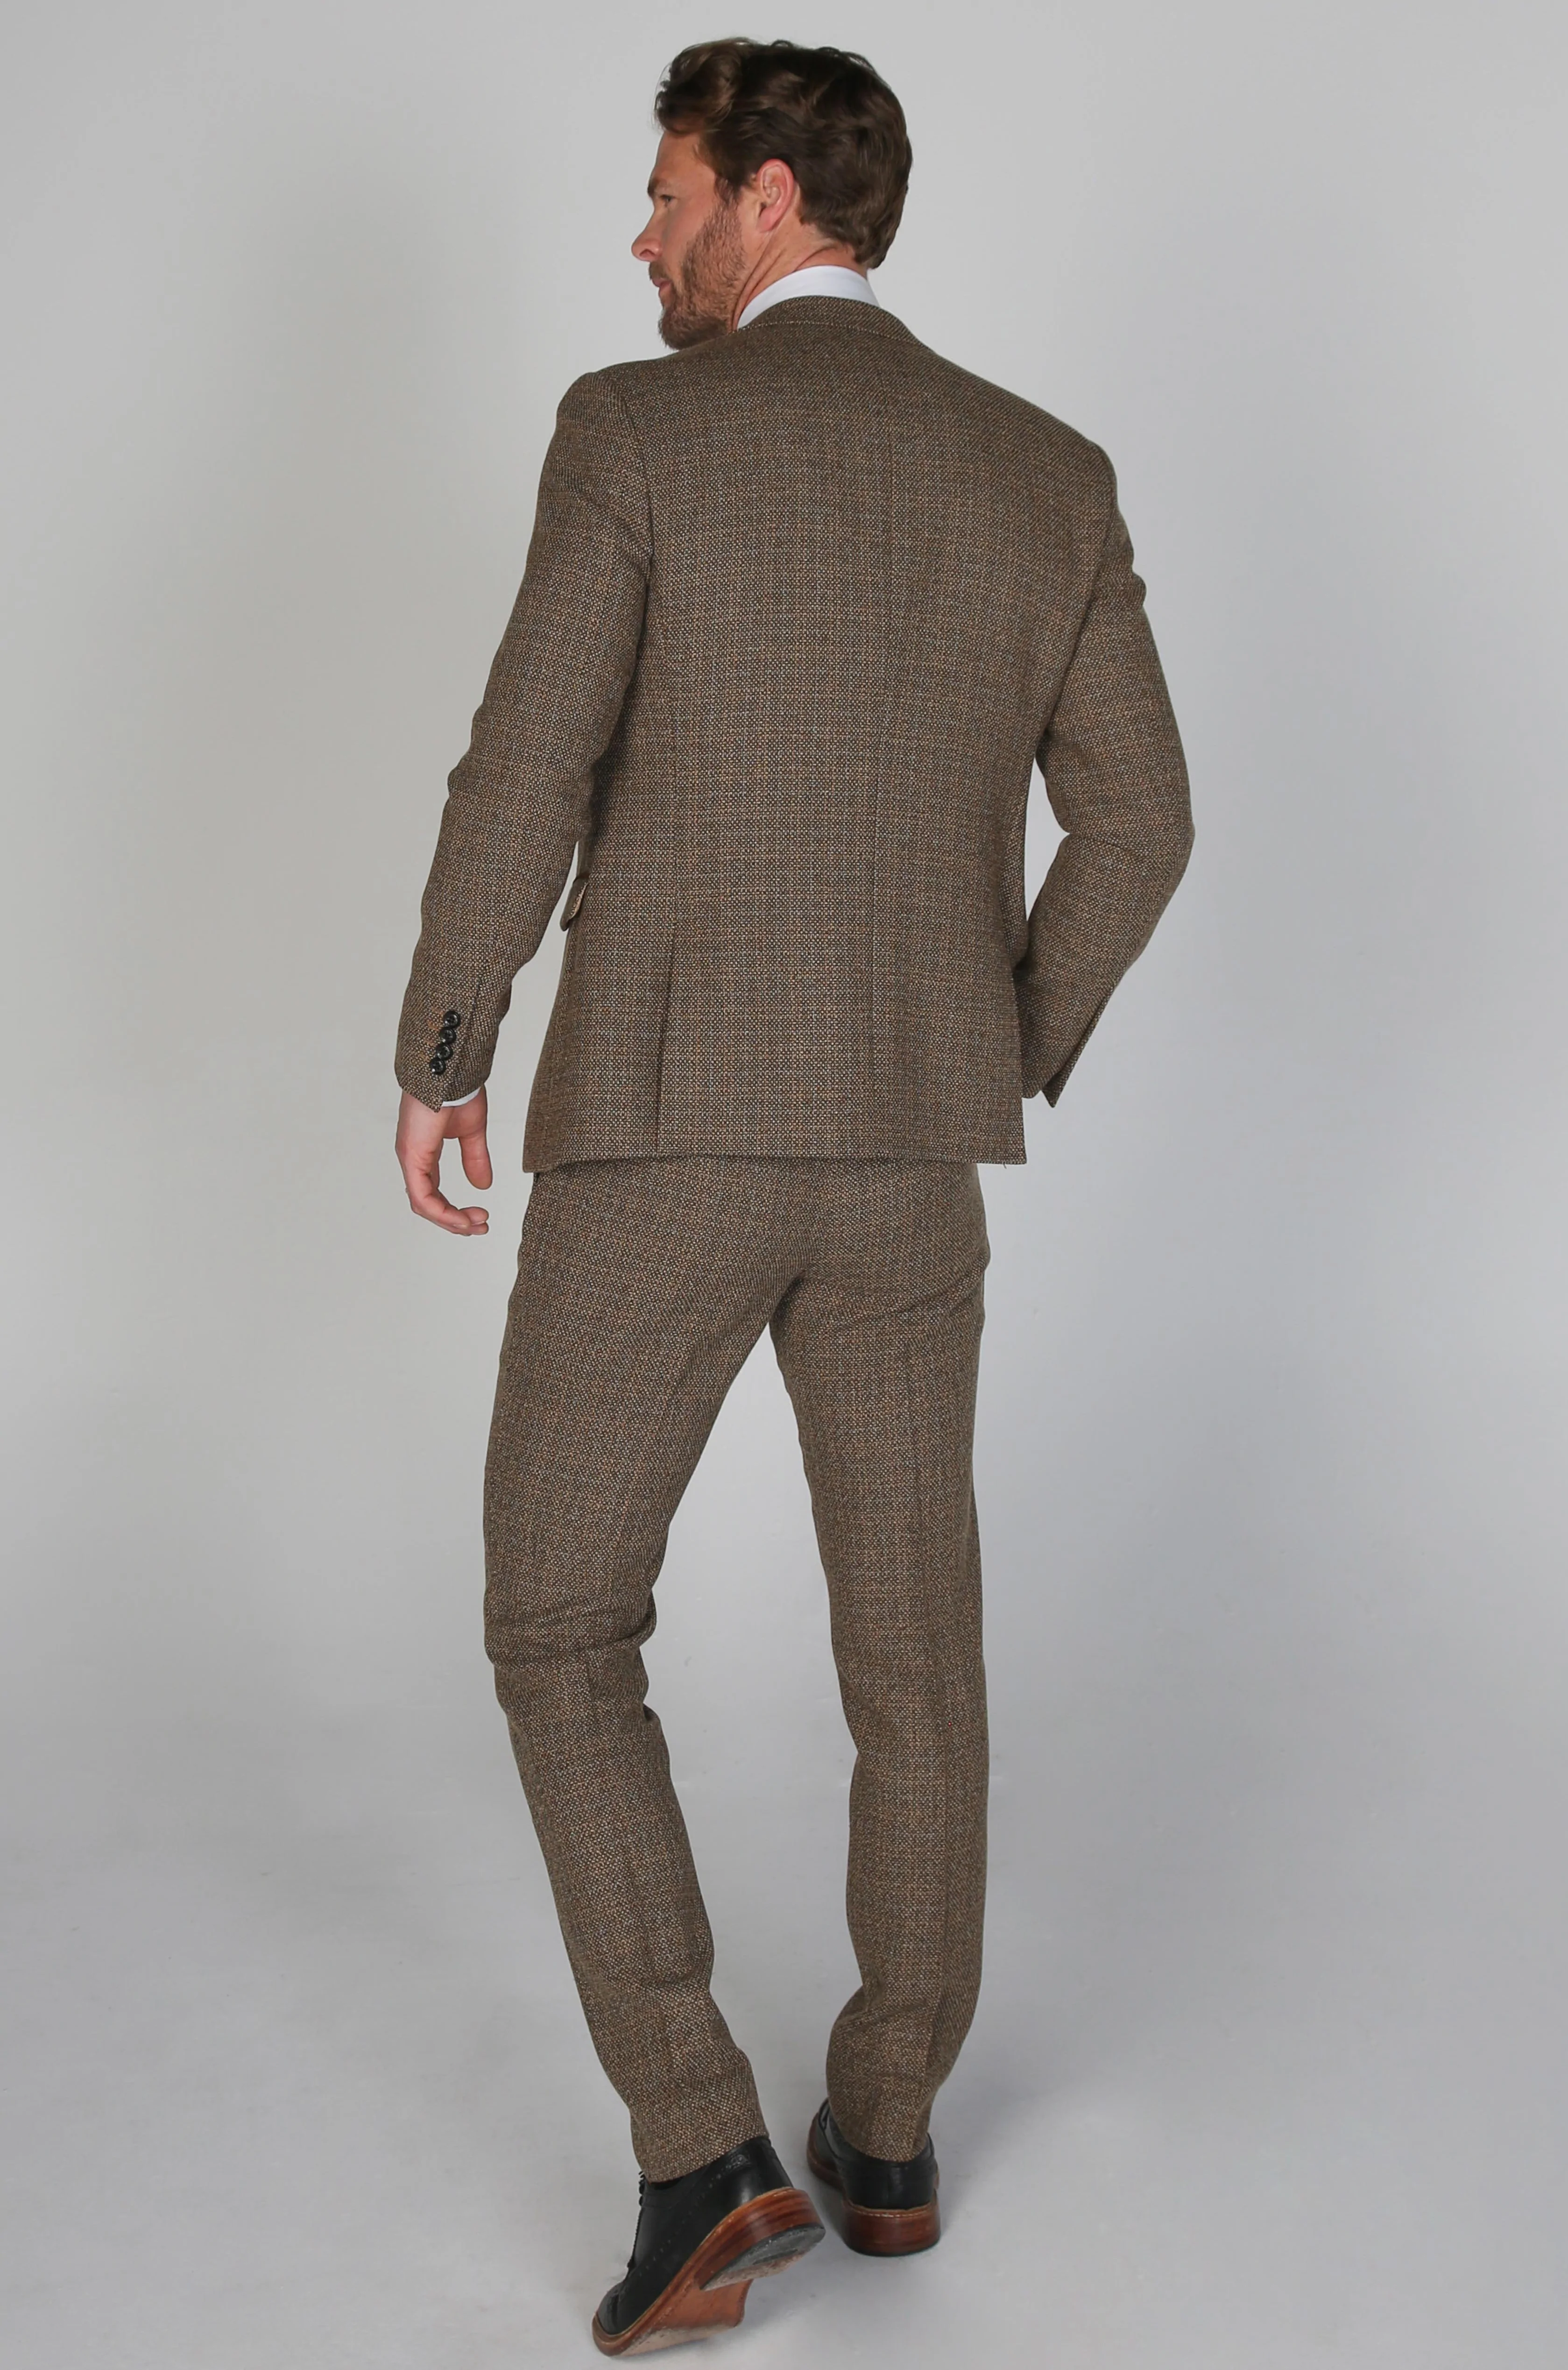 Ralph Brown Tweed Suit By Paul Andrew